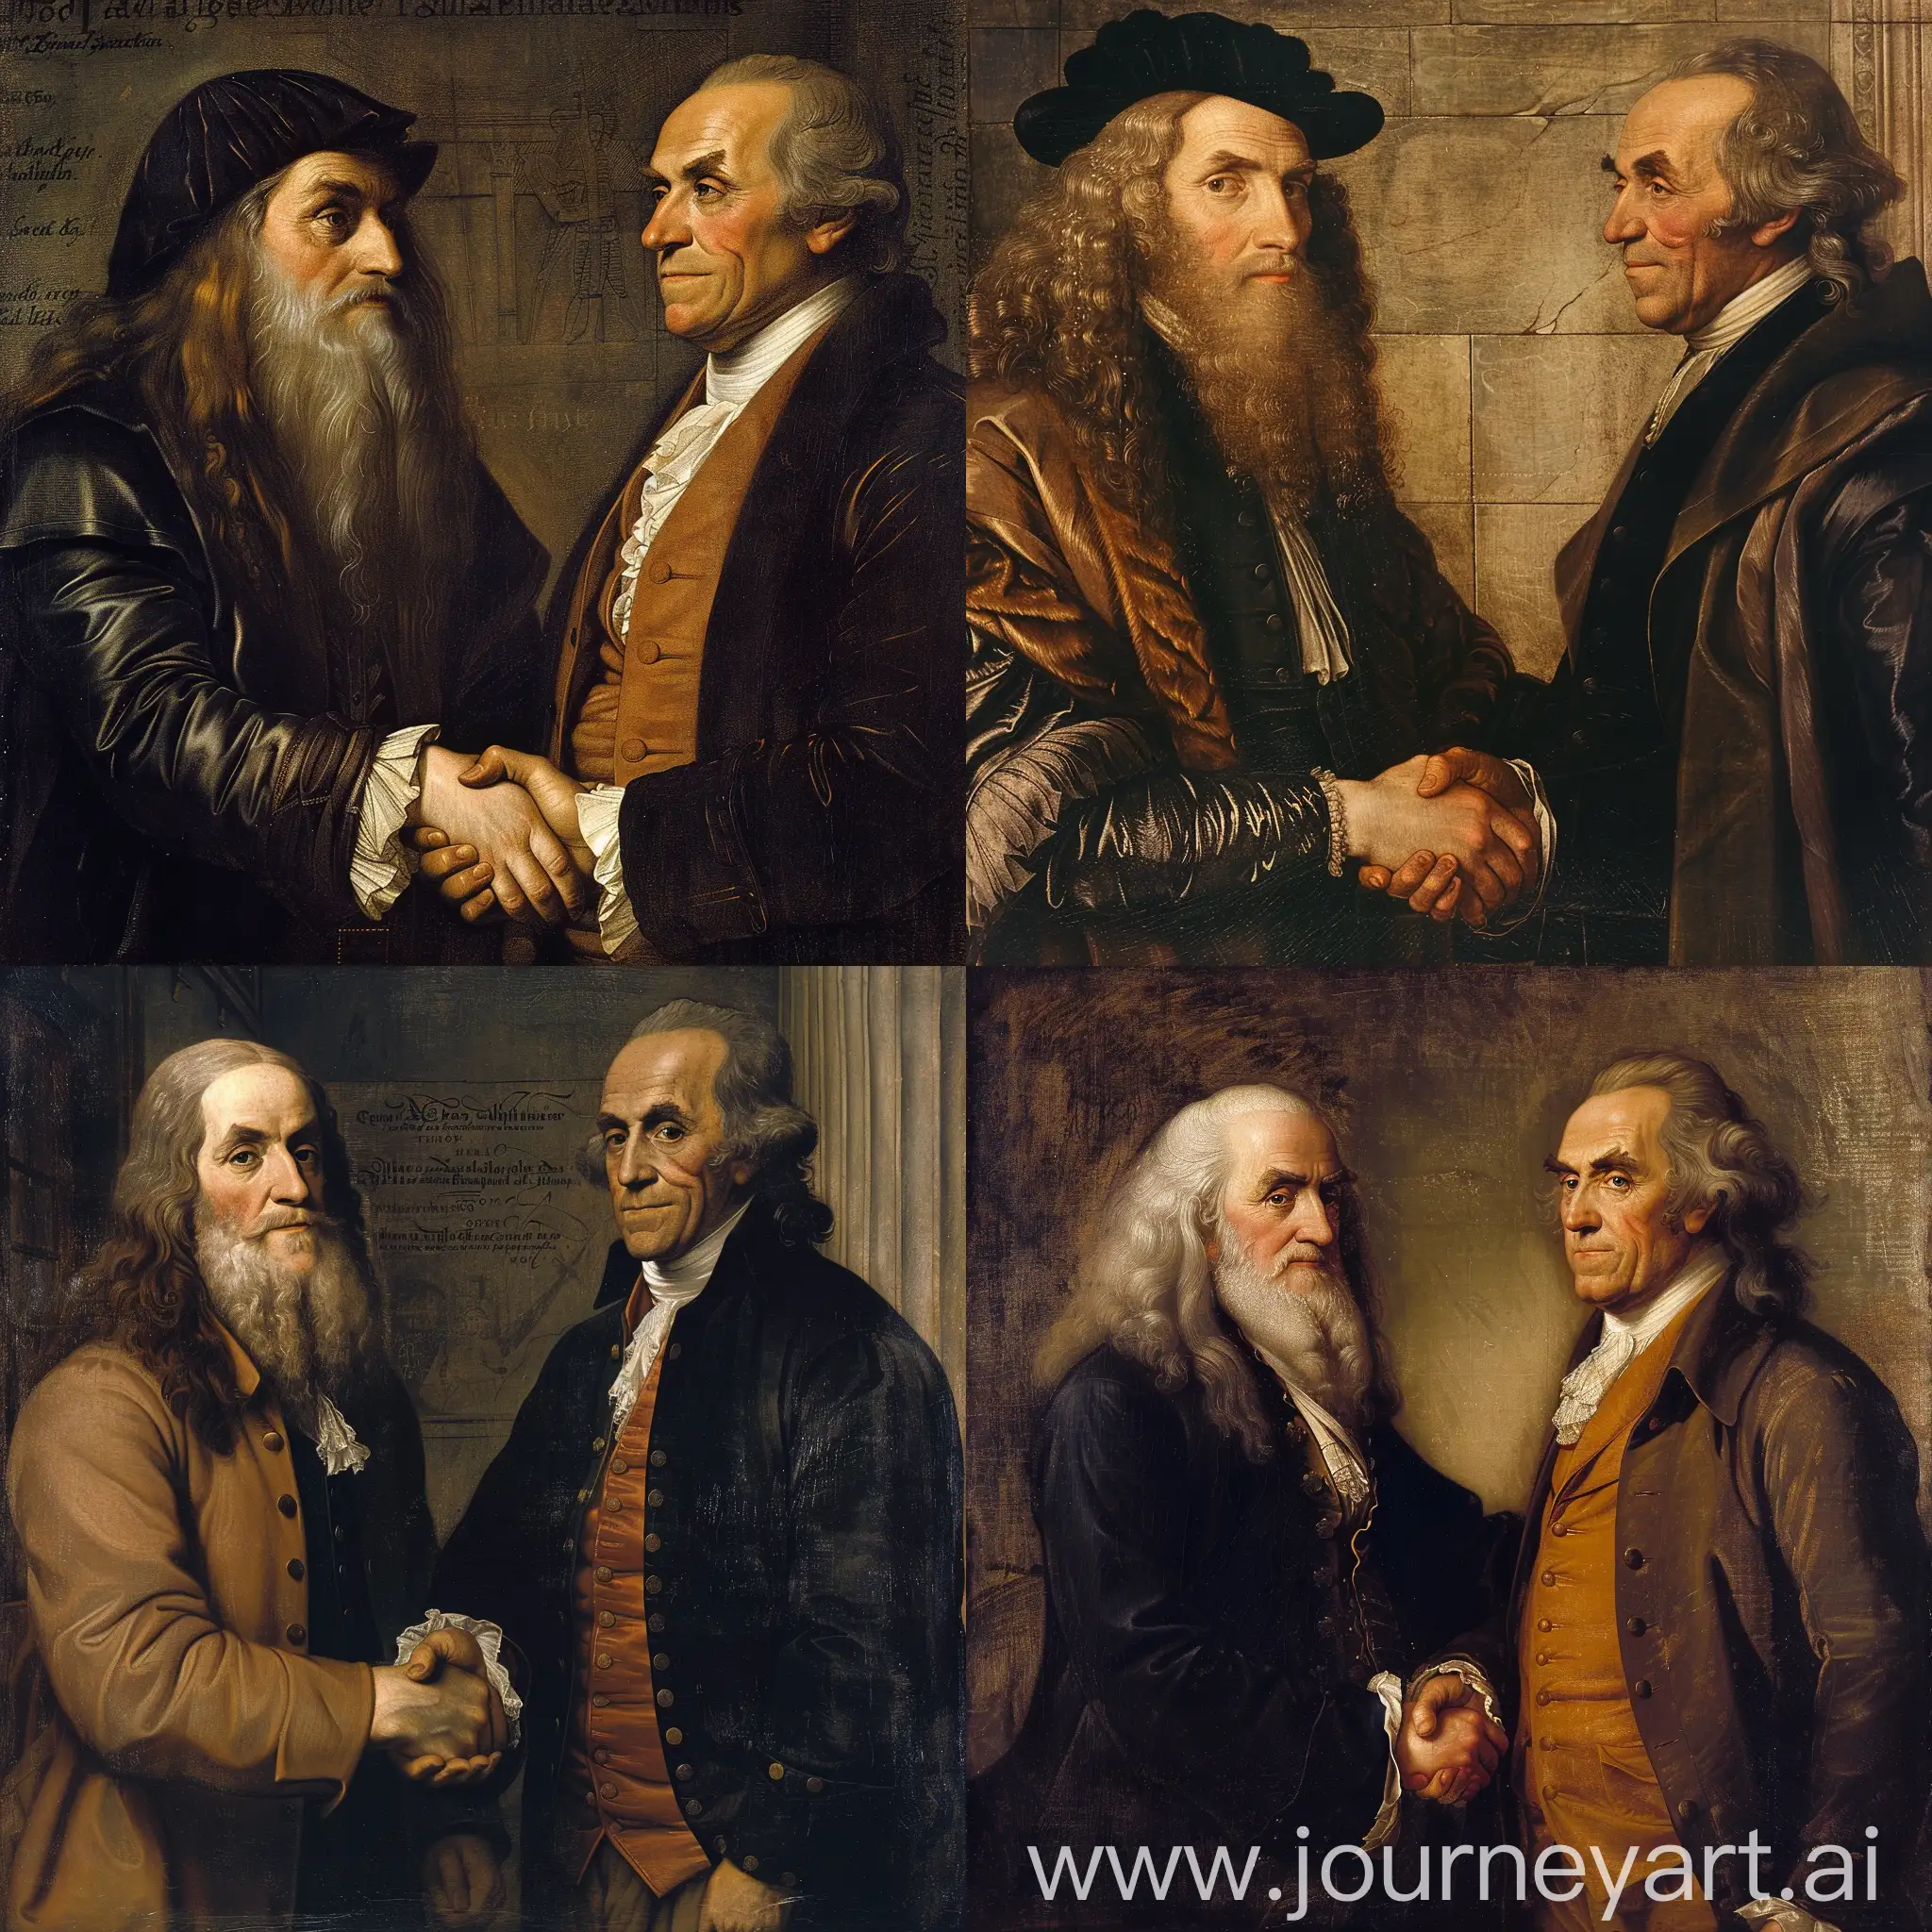 Leonardo-da-Vinci-and-Benjamin-Franklin-Shaking-Hands-in-Historic-Encounter